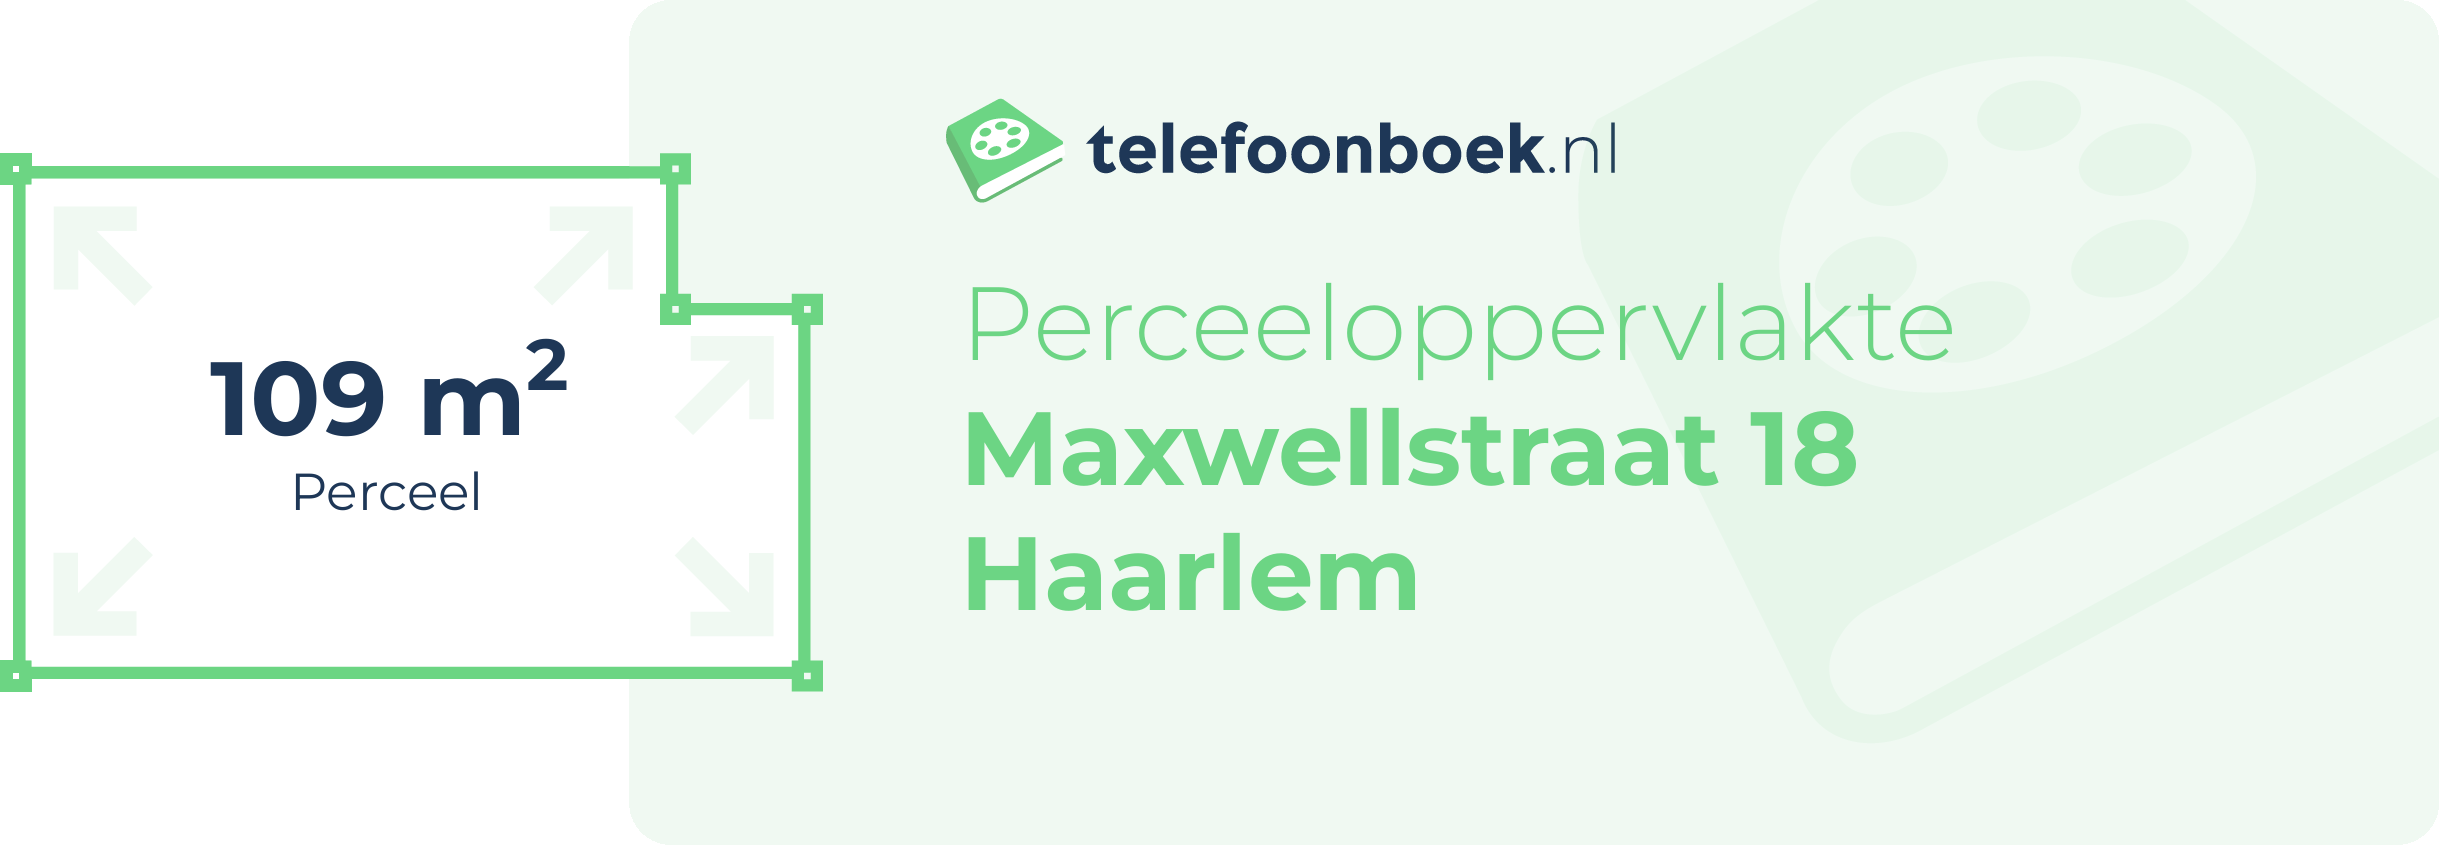 Perceeloppervlakte Maxwellstraat 18 Haarlem